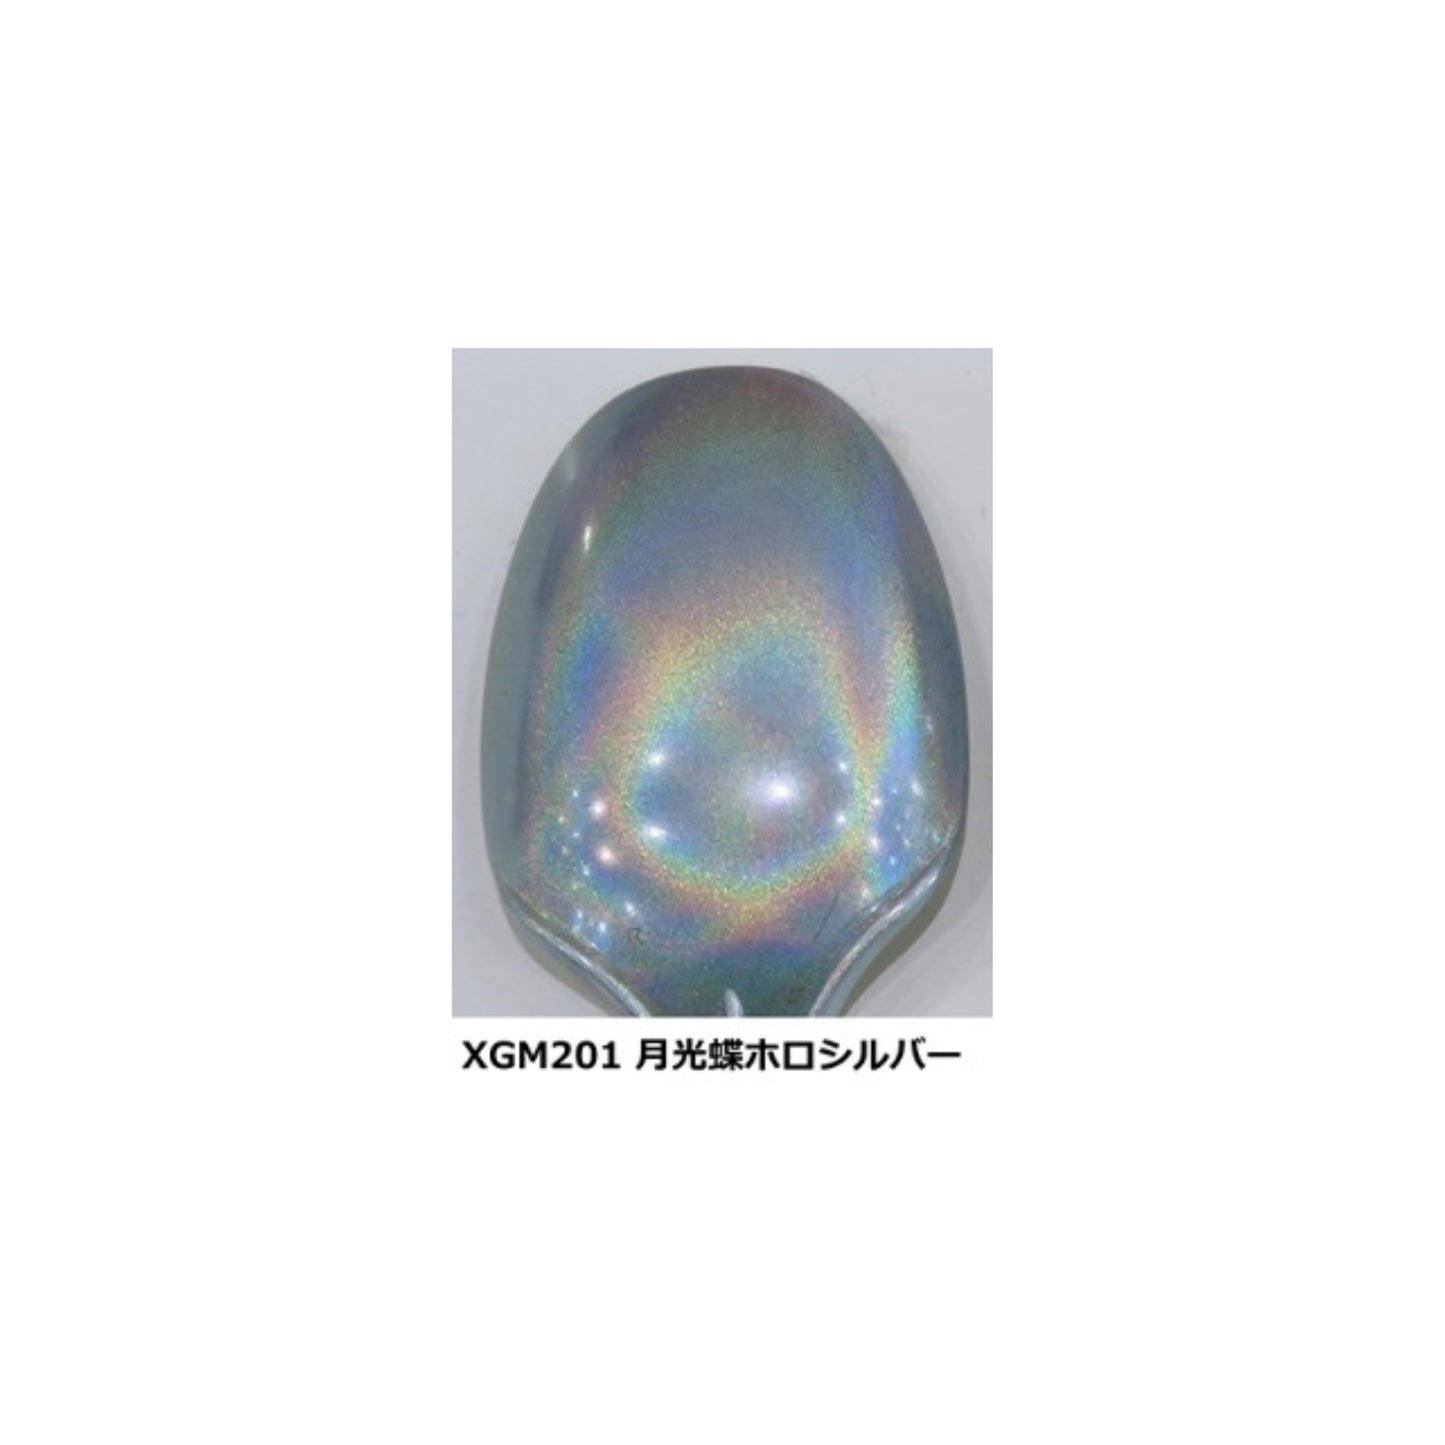 Gundam Marker EX Moonlight Butterfly Holo Silver